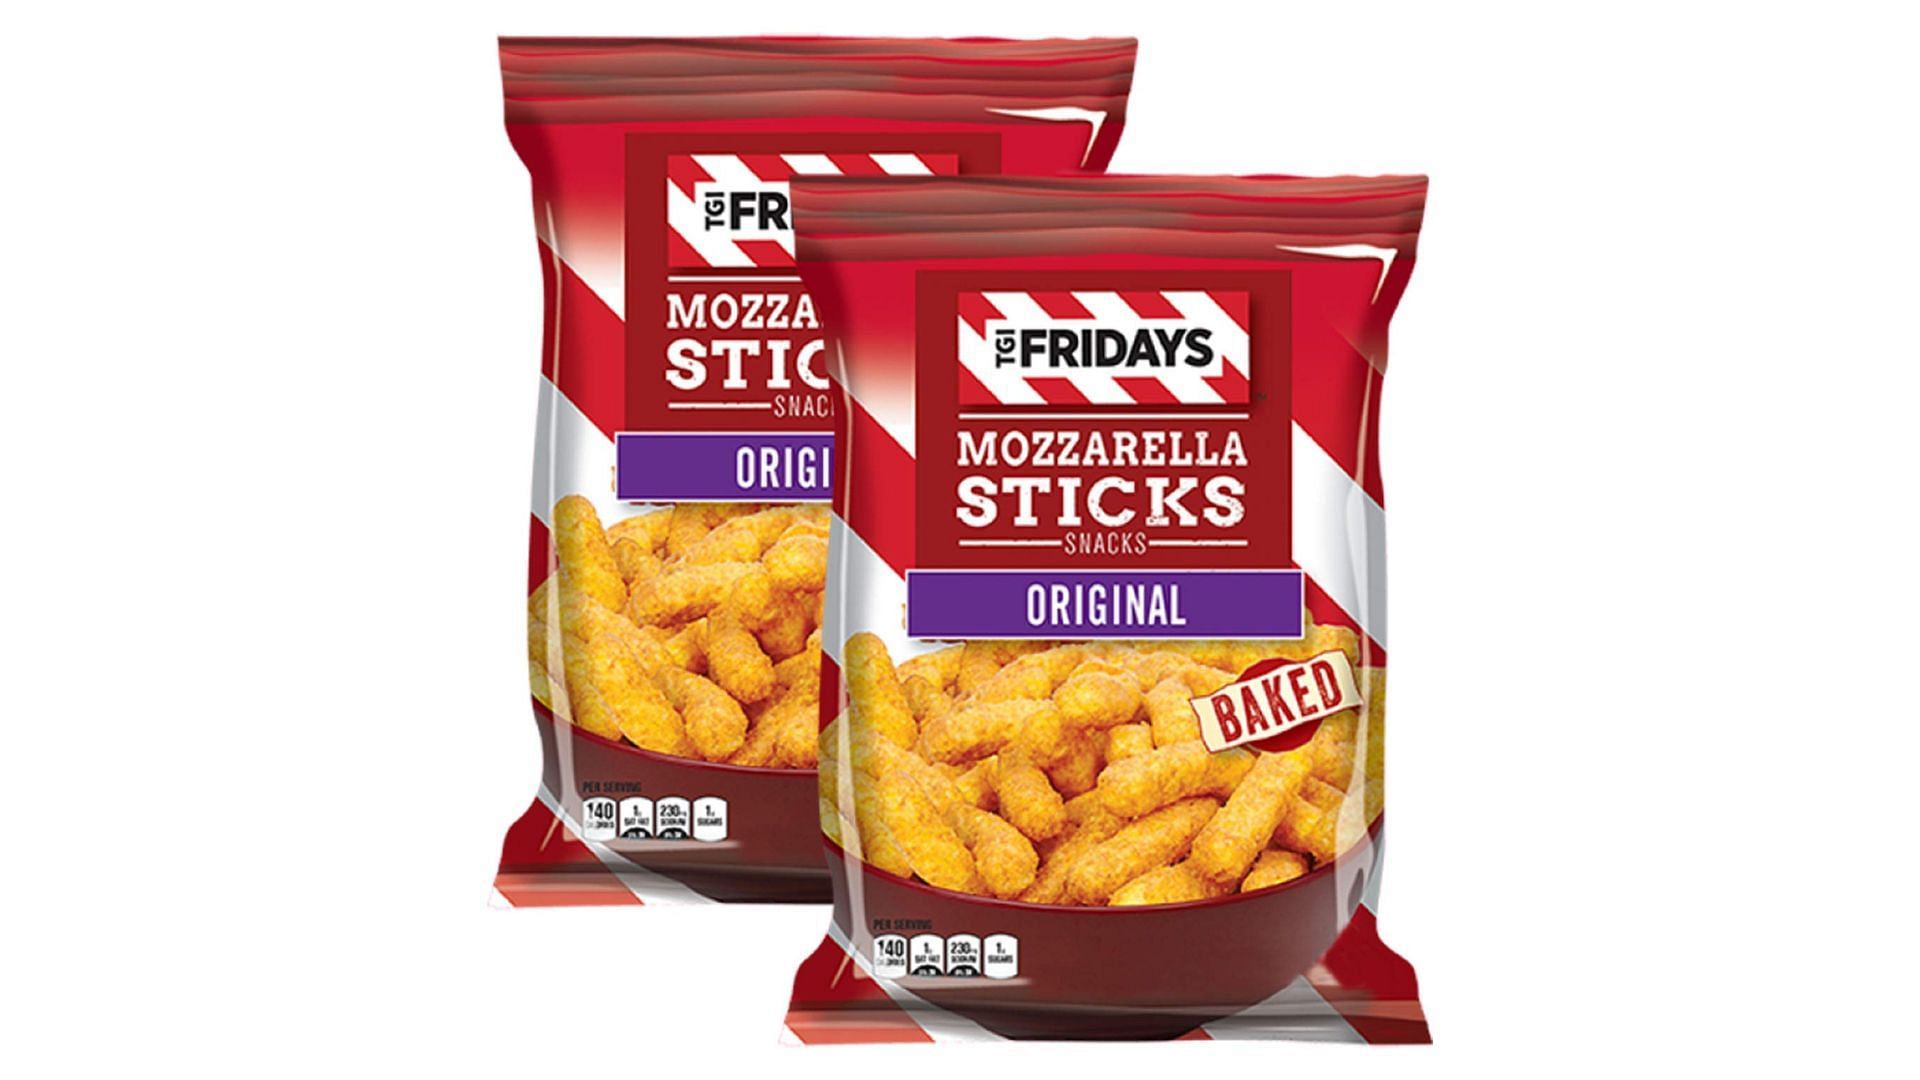 promotional image of the TGI Fridays Mozzarella Sticks that led to the lawsuit (Image via TGI Friday/Amazon)